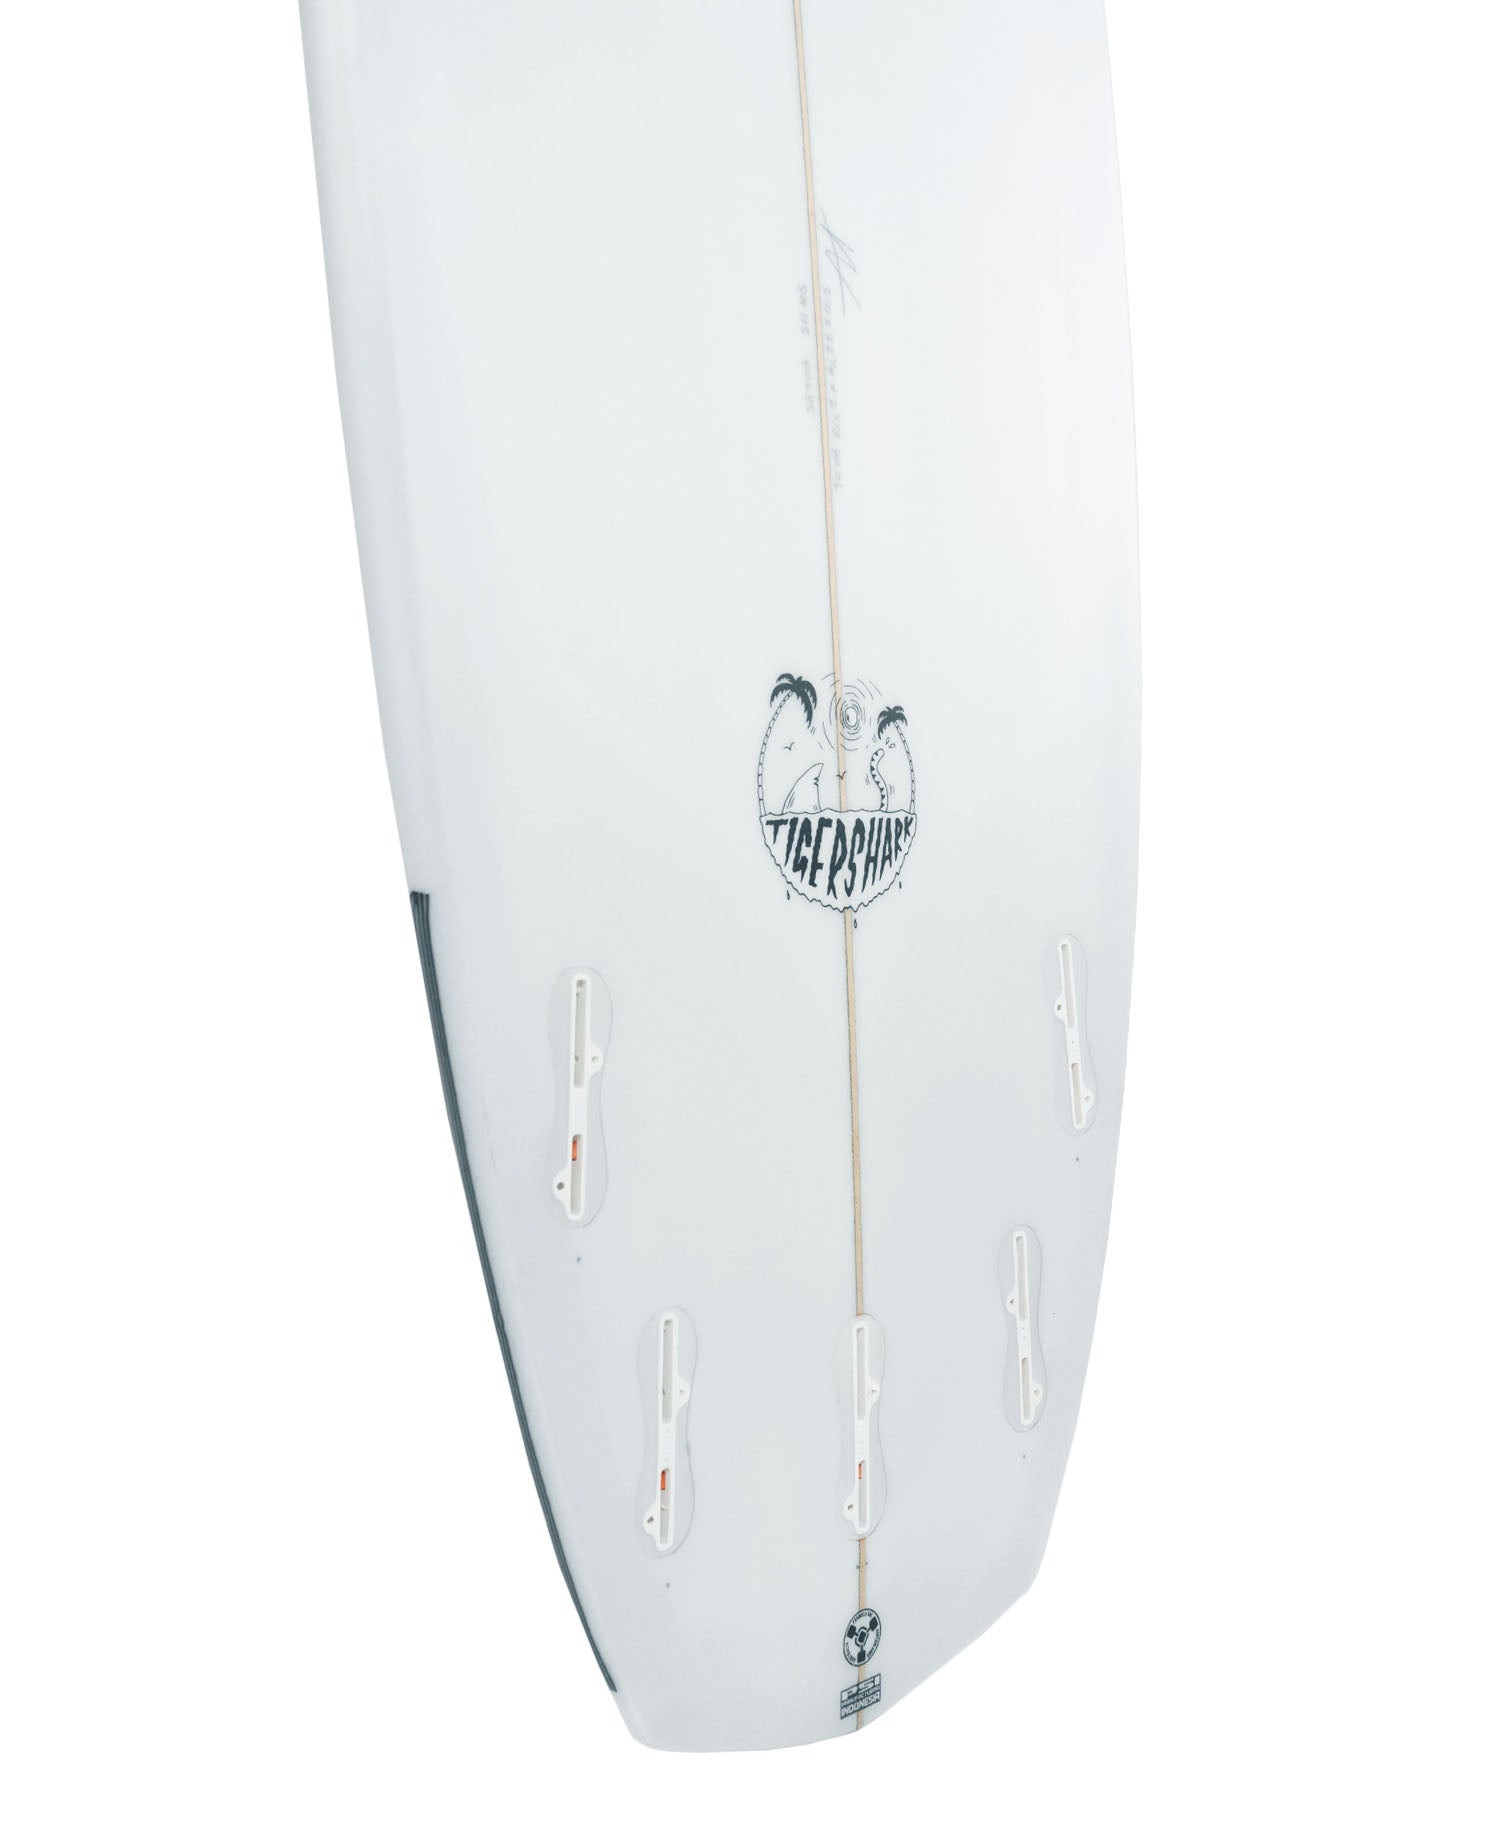 ANNESLEY 'TIGER SHARK' SURFBOARD